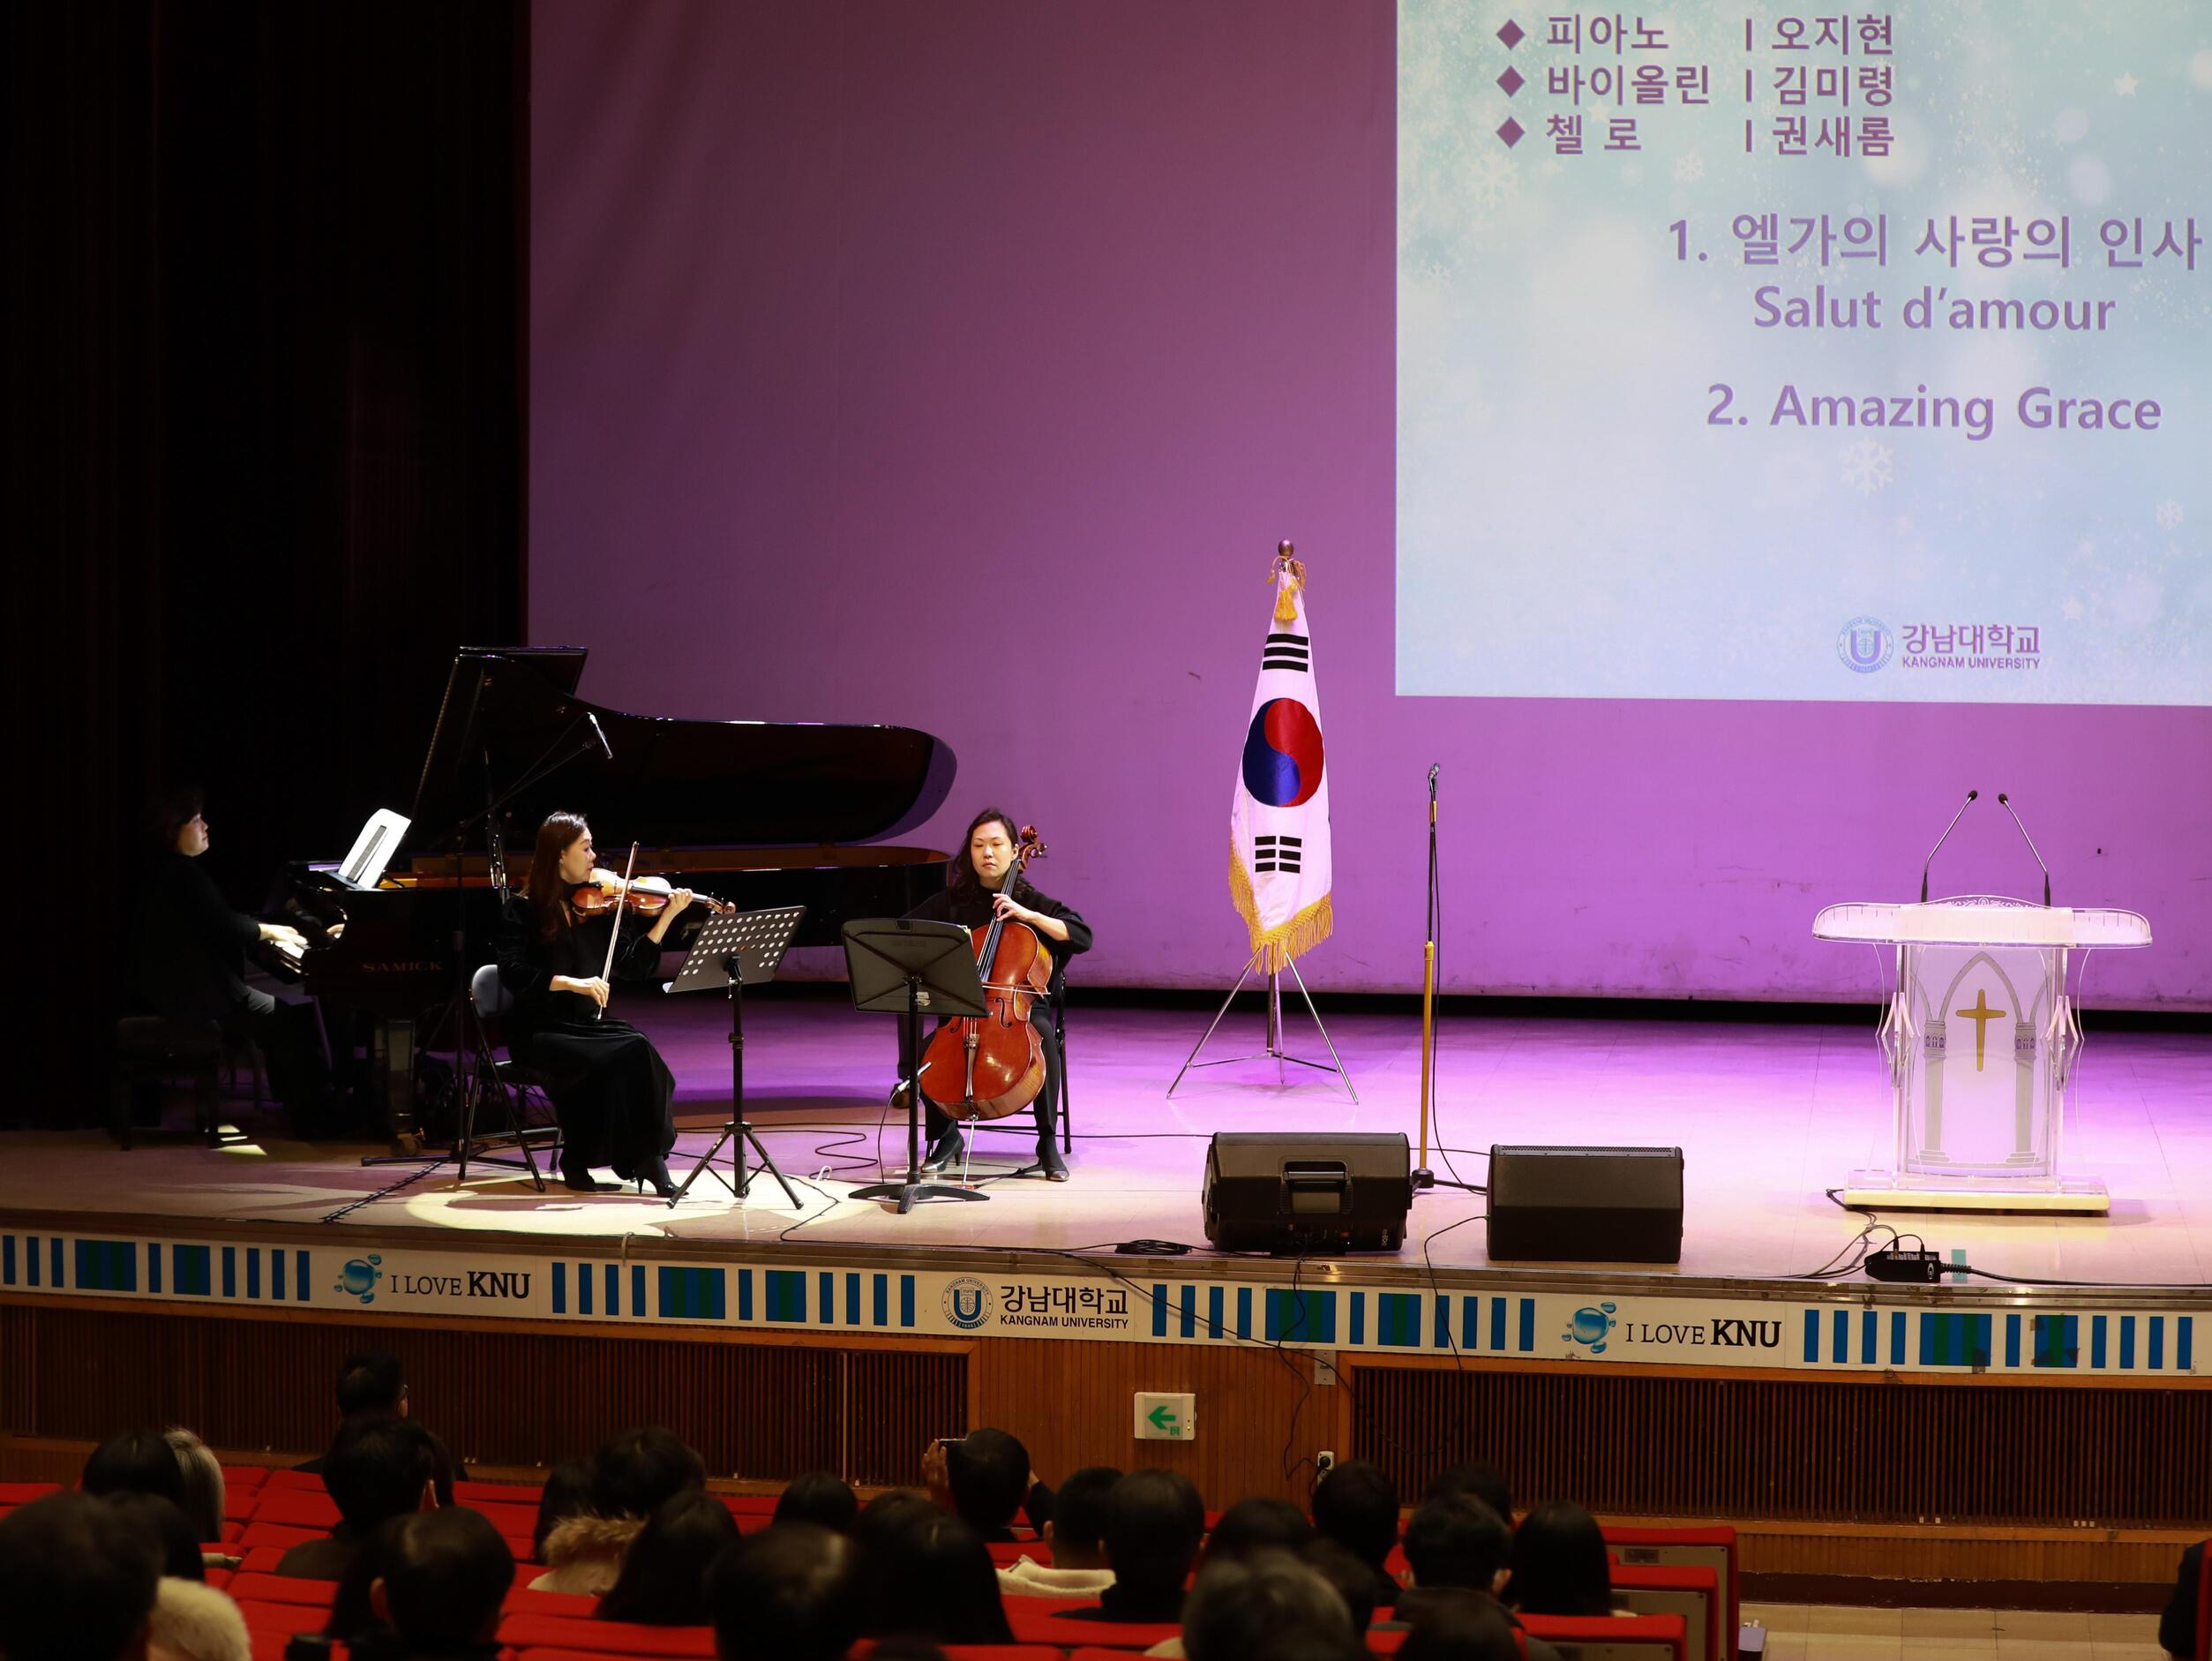 피아노 오지현 교수, 바이올린 김미령 교수, 첼로 권새롬 교수의 축하공연 사진입니다.